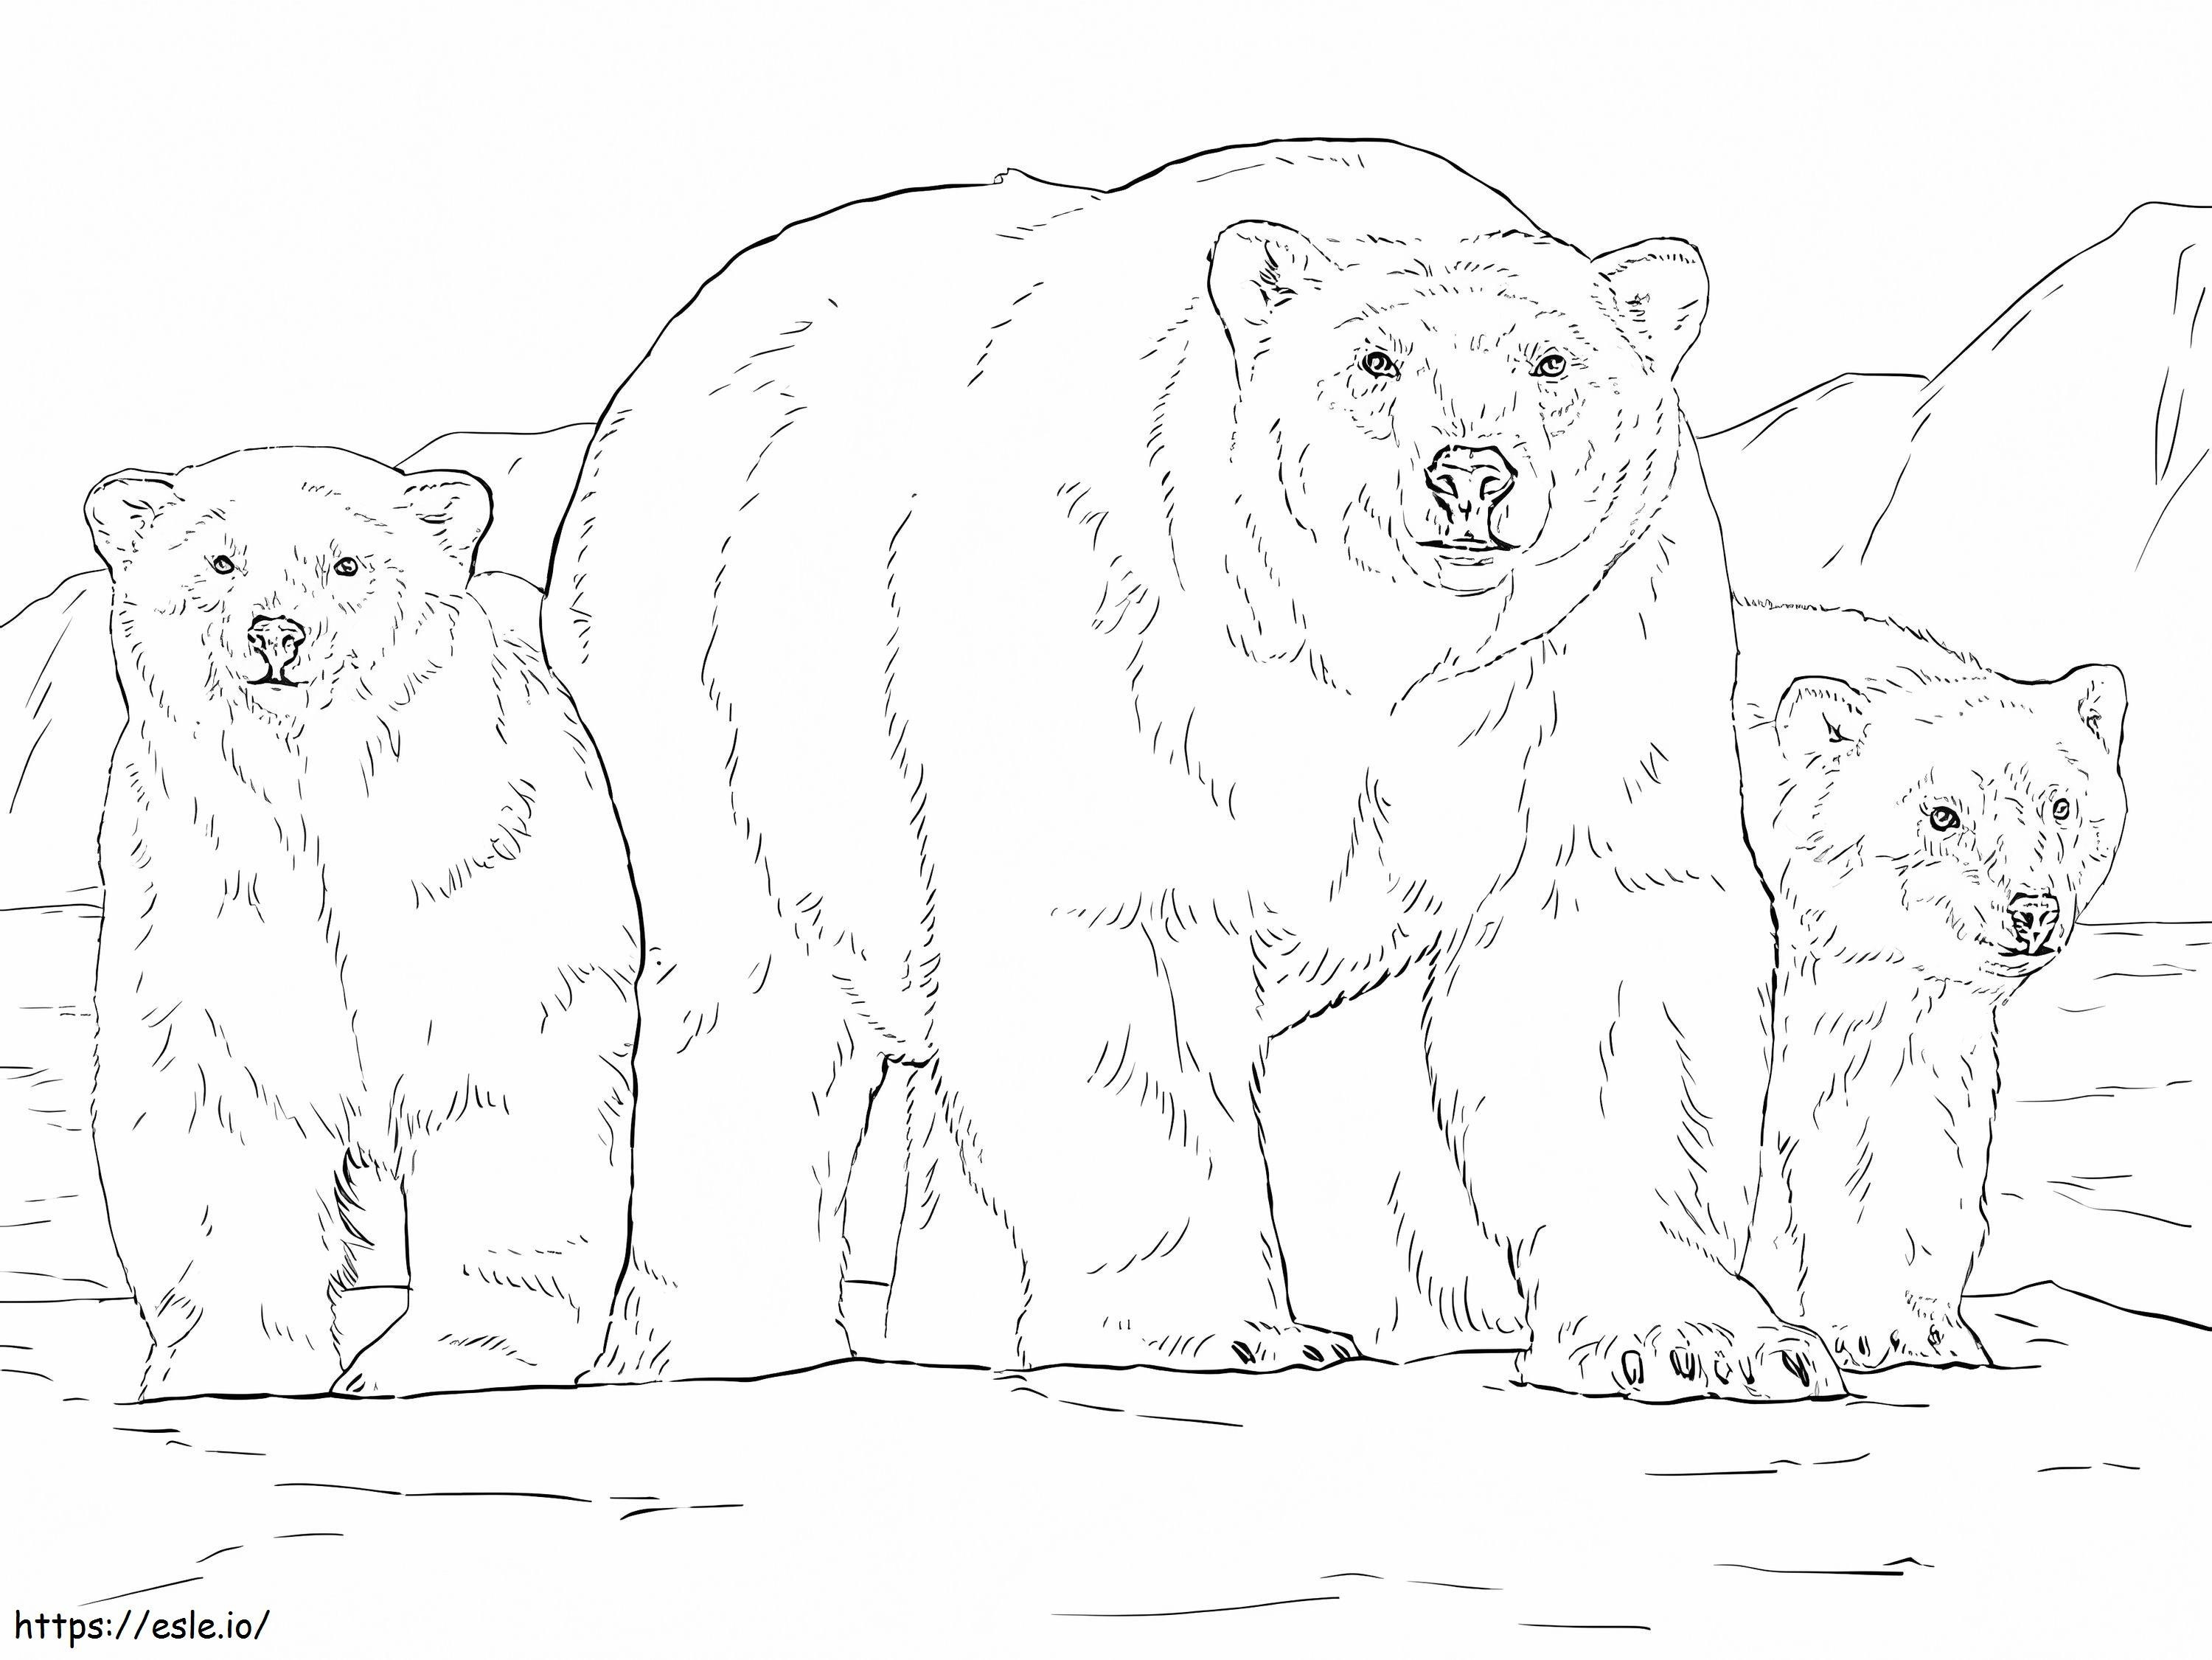 Ursos polares realistas para colorir